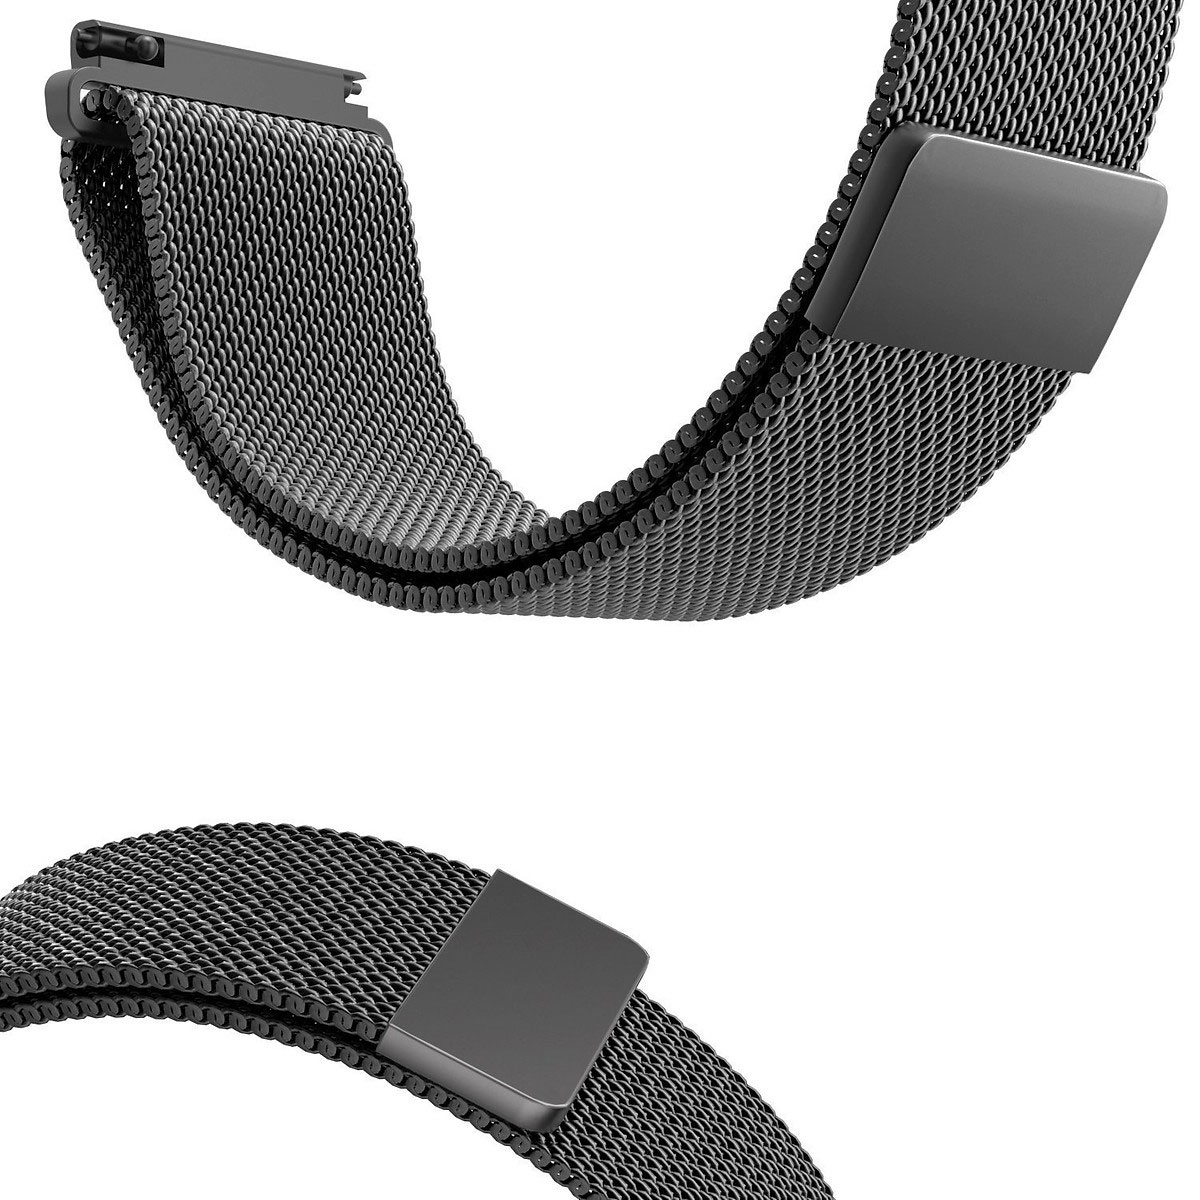 Dây đồng hồ 22mm lưới thép cho đồng hồ Gear Sport, Gear S3, S3Classic, Galaxy Watch 46mm - Đen -Hàng nhập khảu